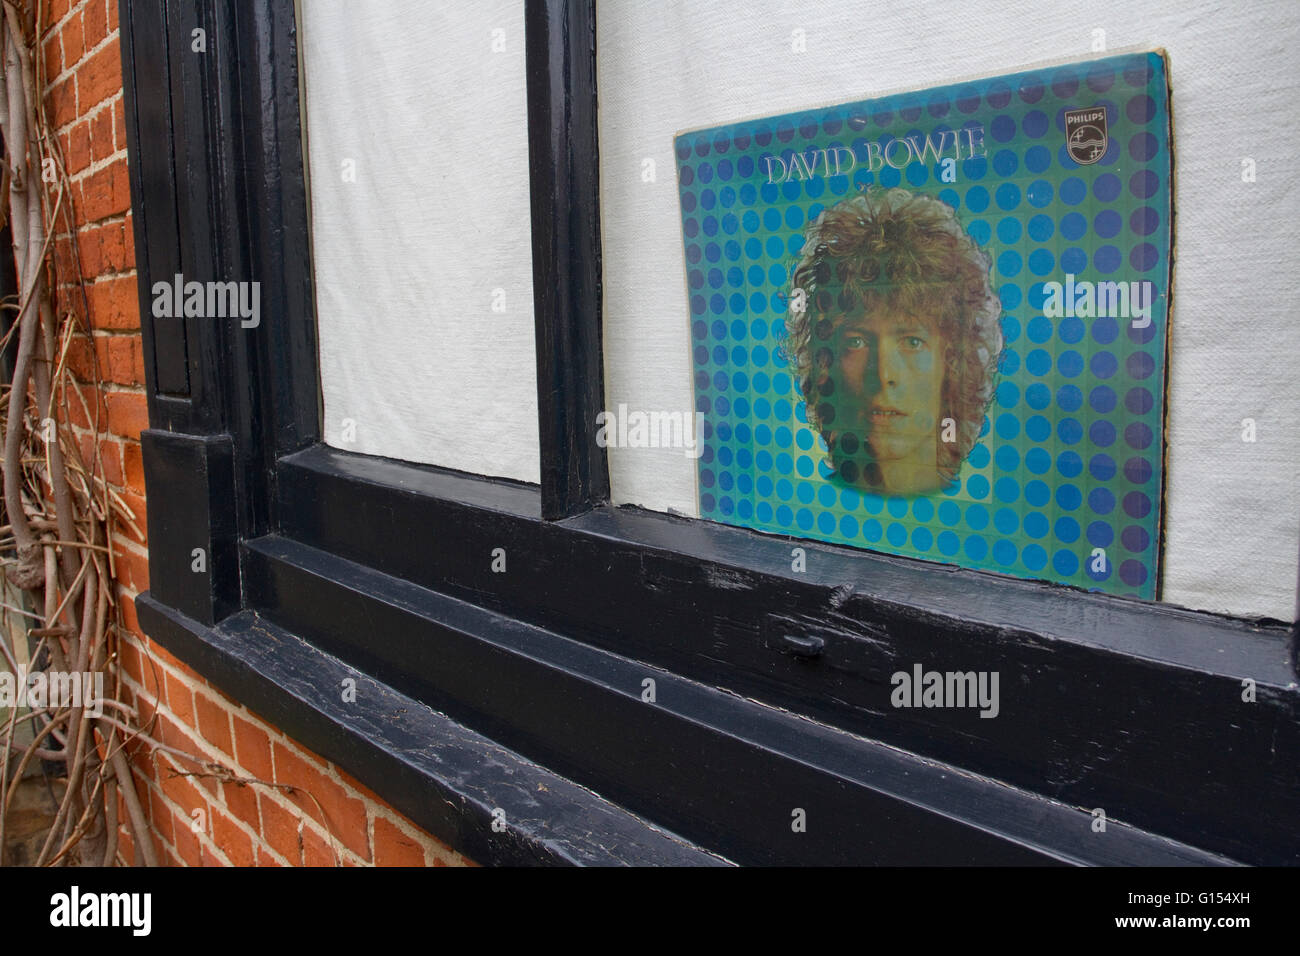 Couverture de l'album David Bowie Space Oddity affichées dans une fenêtre Banque D'Images